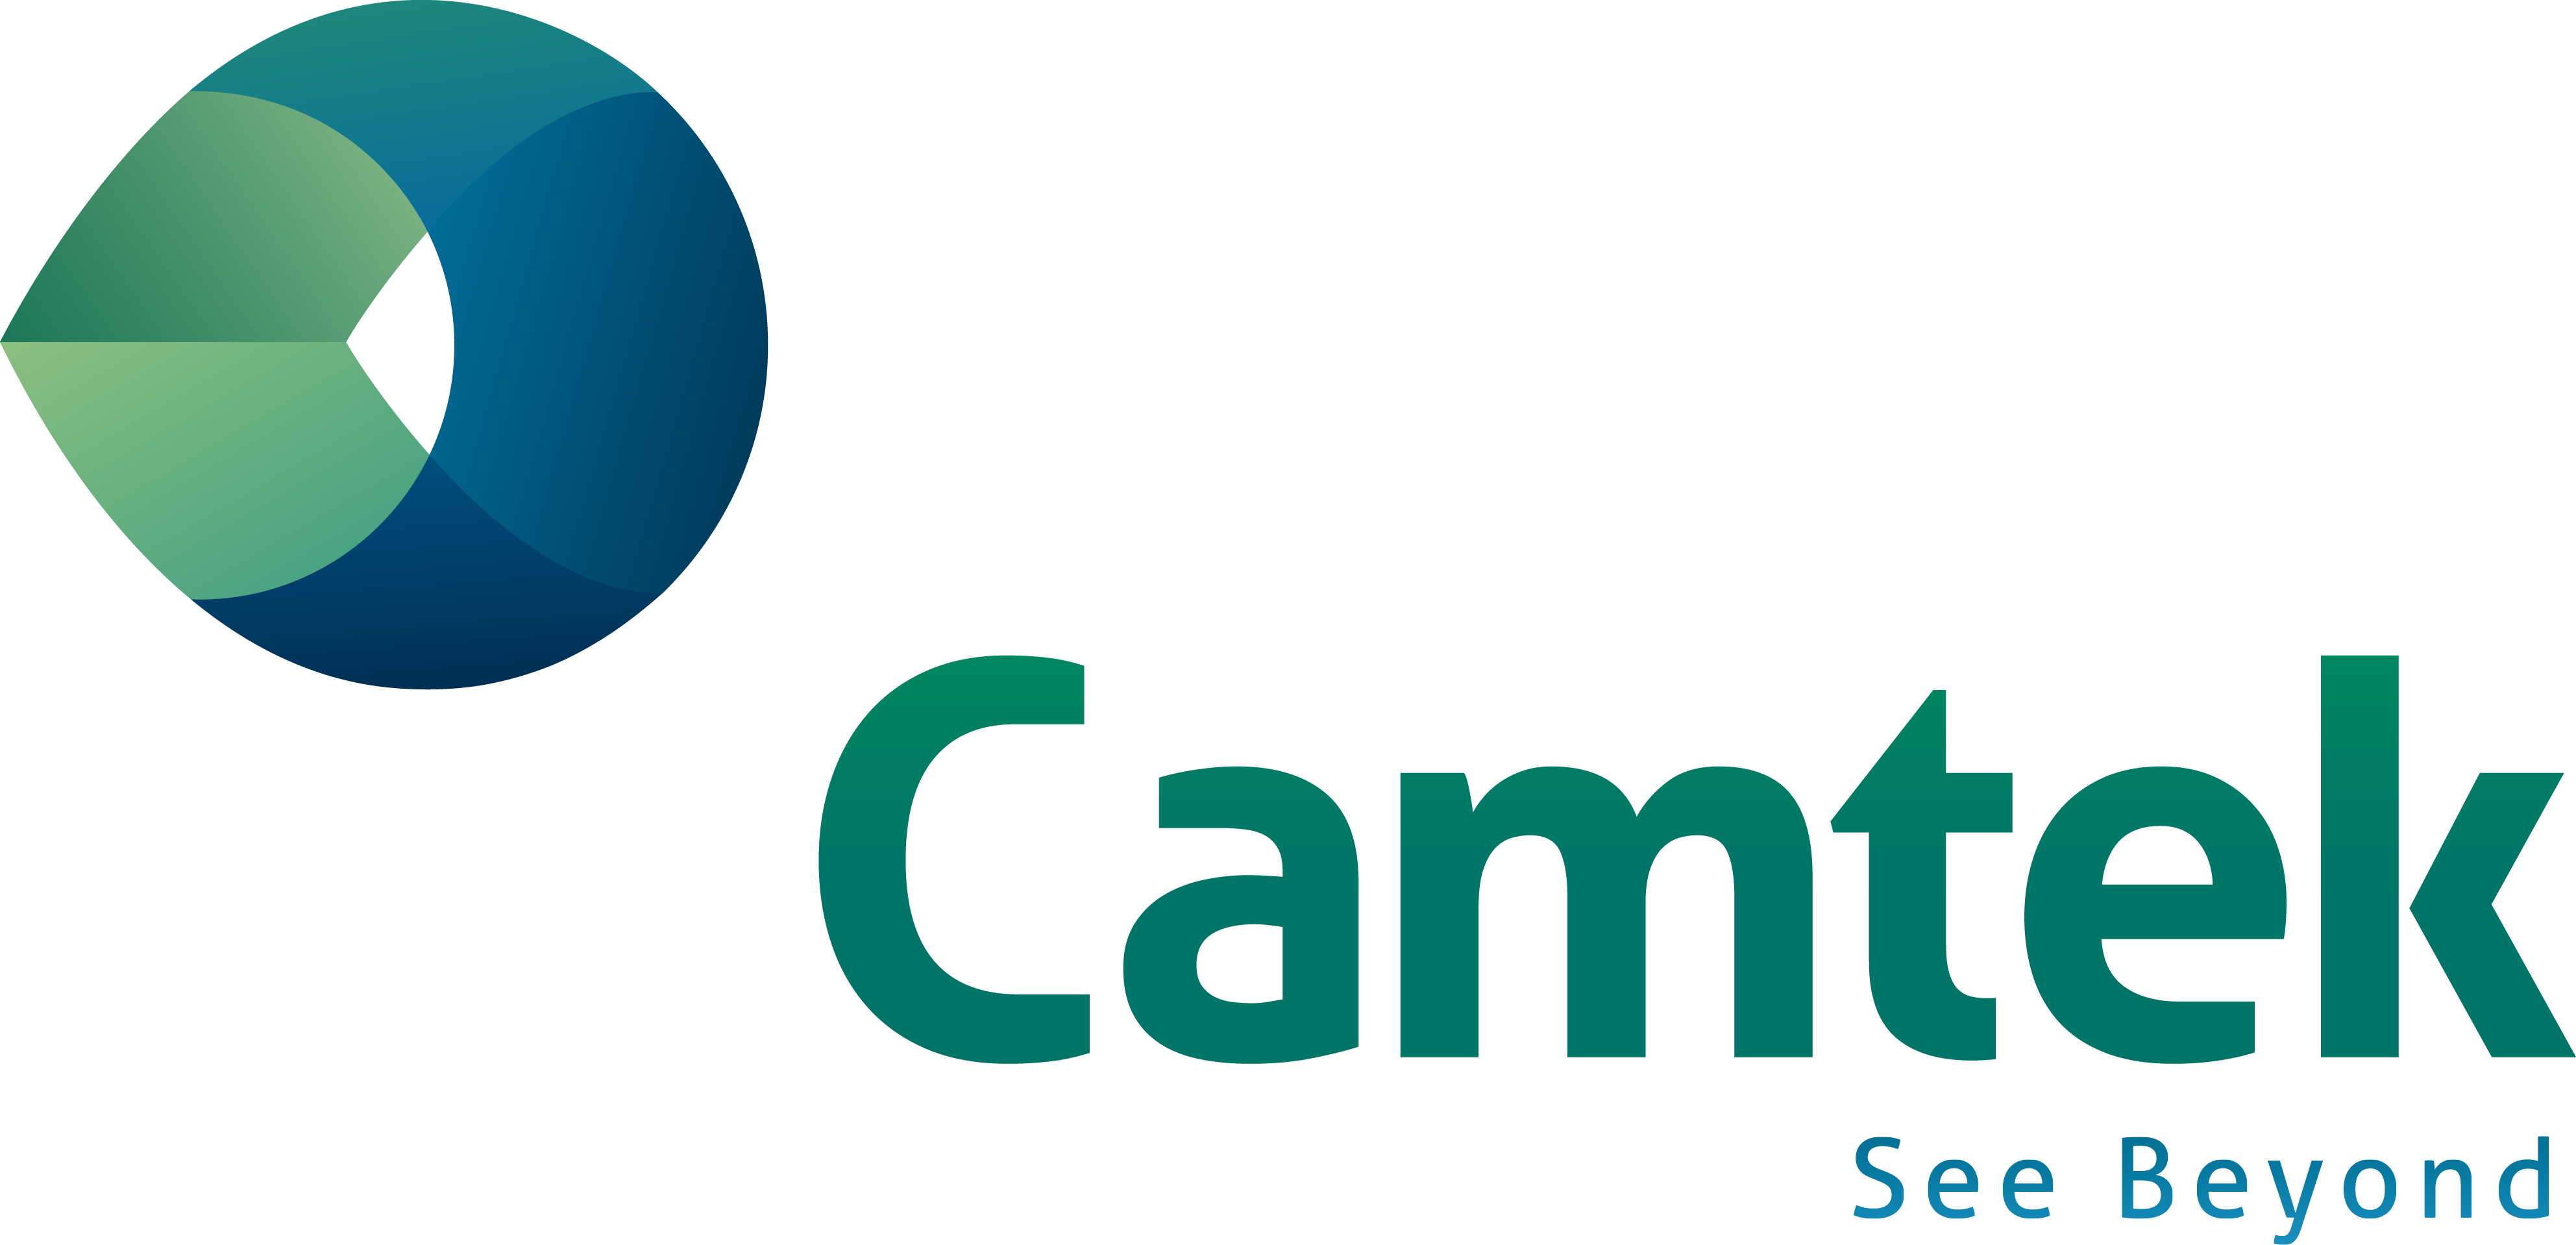 Camtek logo large (transparent PNG)